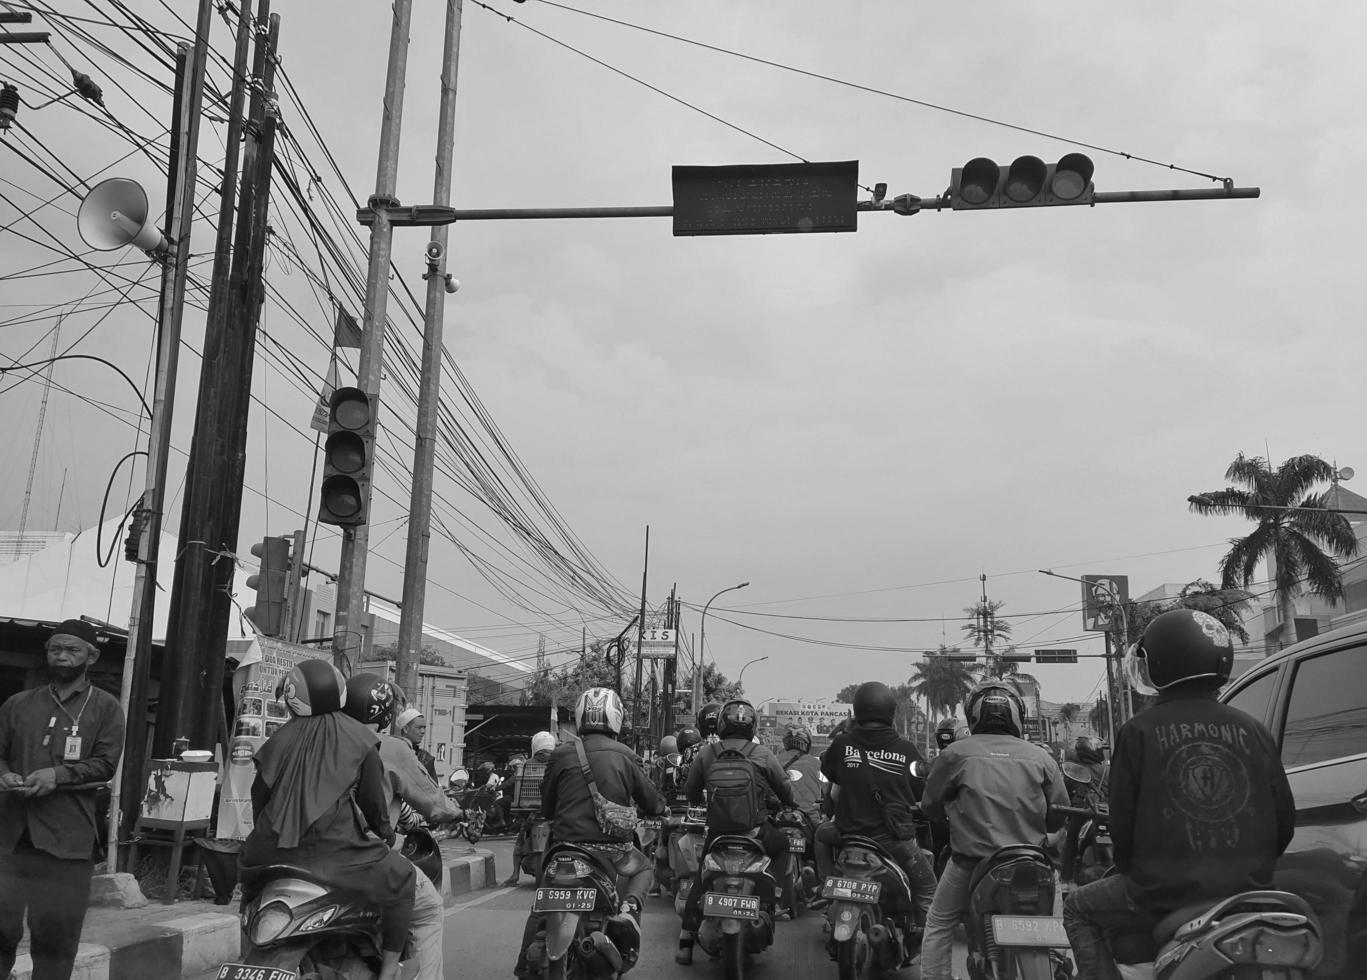 java occidental, indonesia en julio de 2022. muchos motociclistas se detienen en los semáforos foto